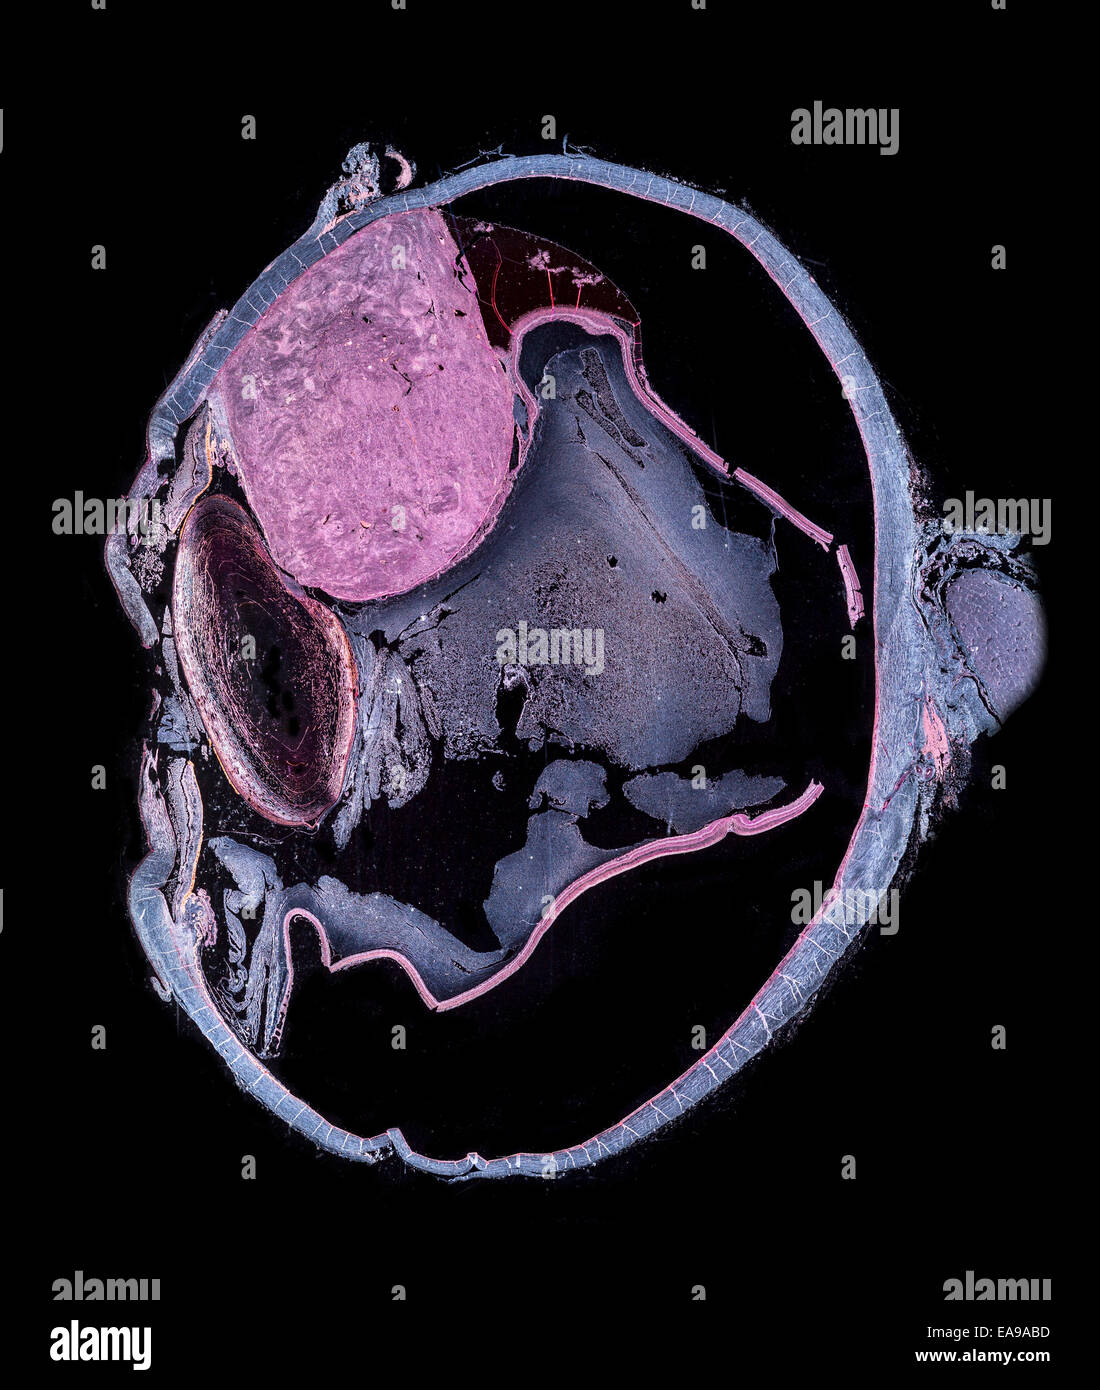 La sección muestra la estructura del ojo humano con los enfermos melanótico tumor (gran zona rosa) darkfield microfotografía Foto de stock